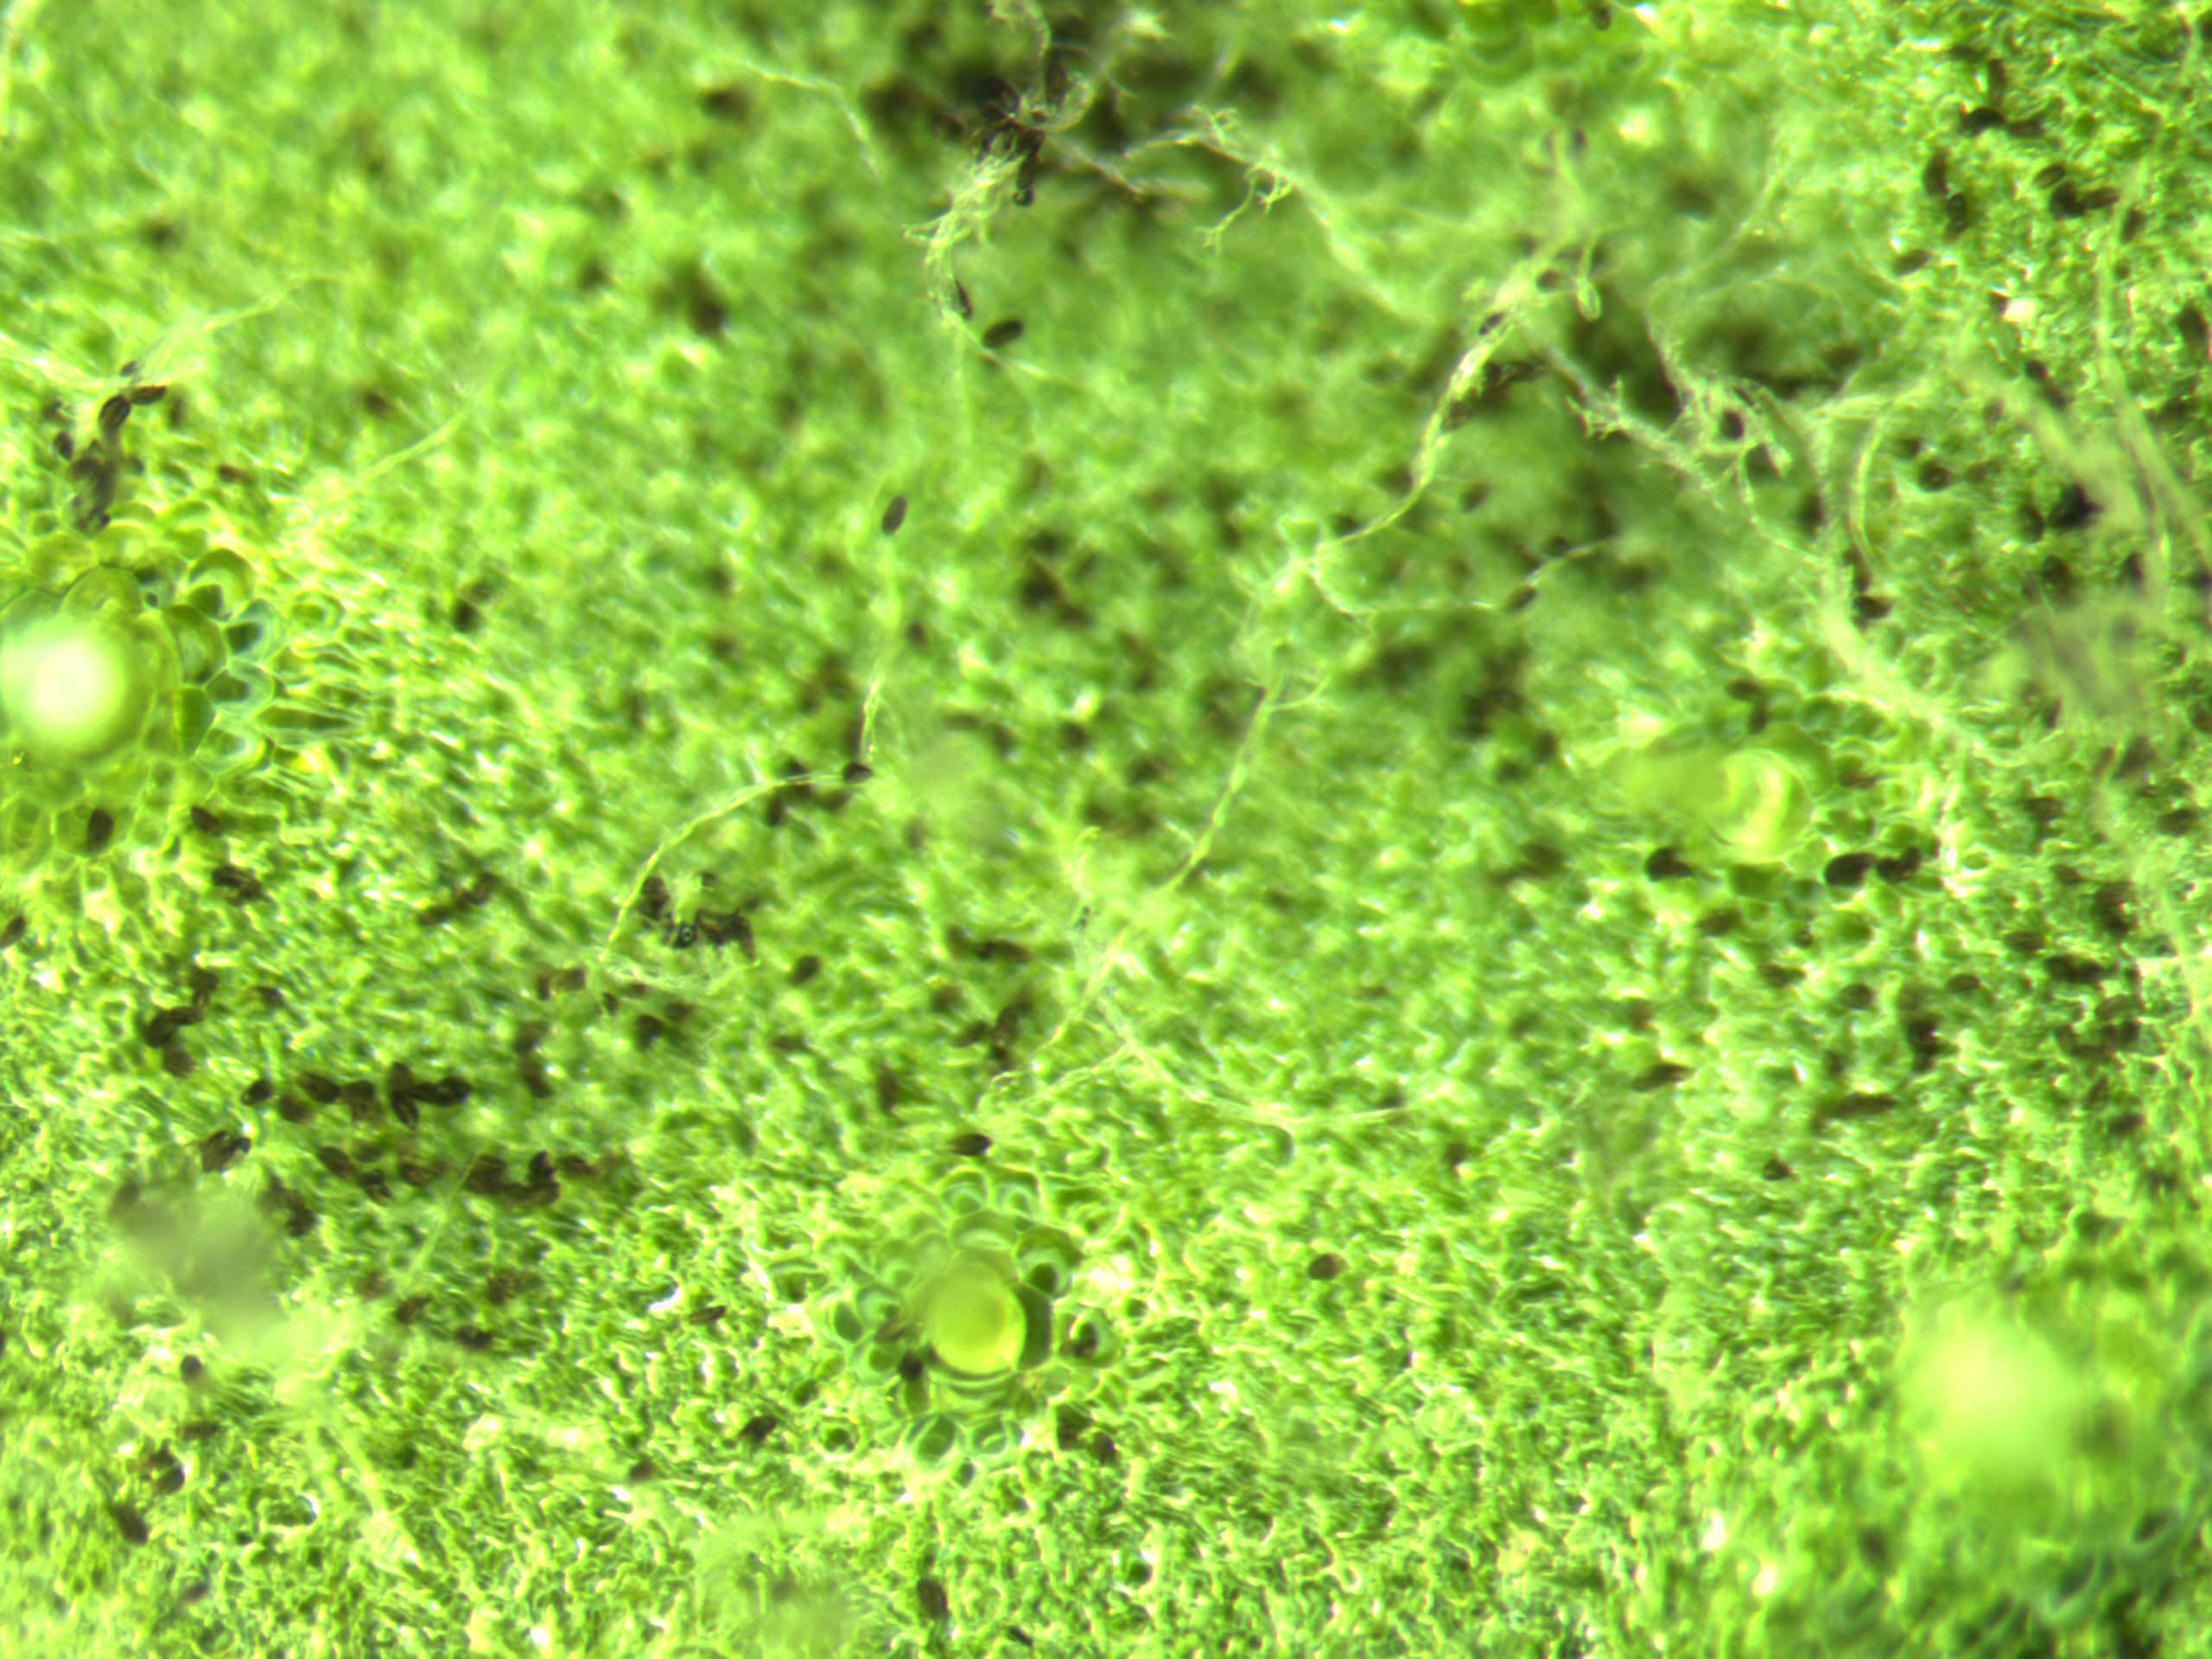 spores on underside of leaf